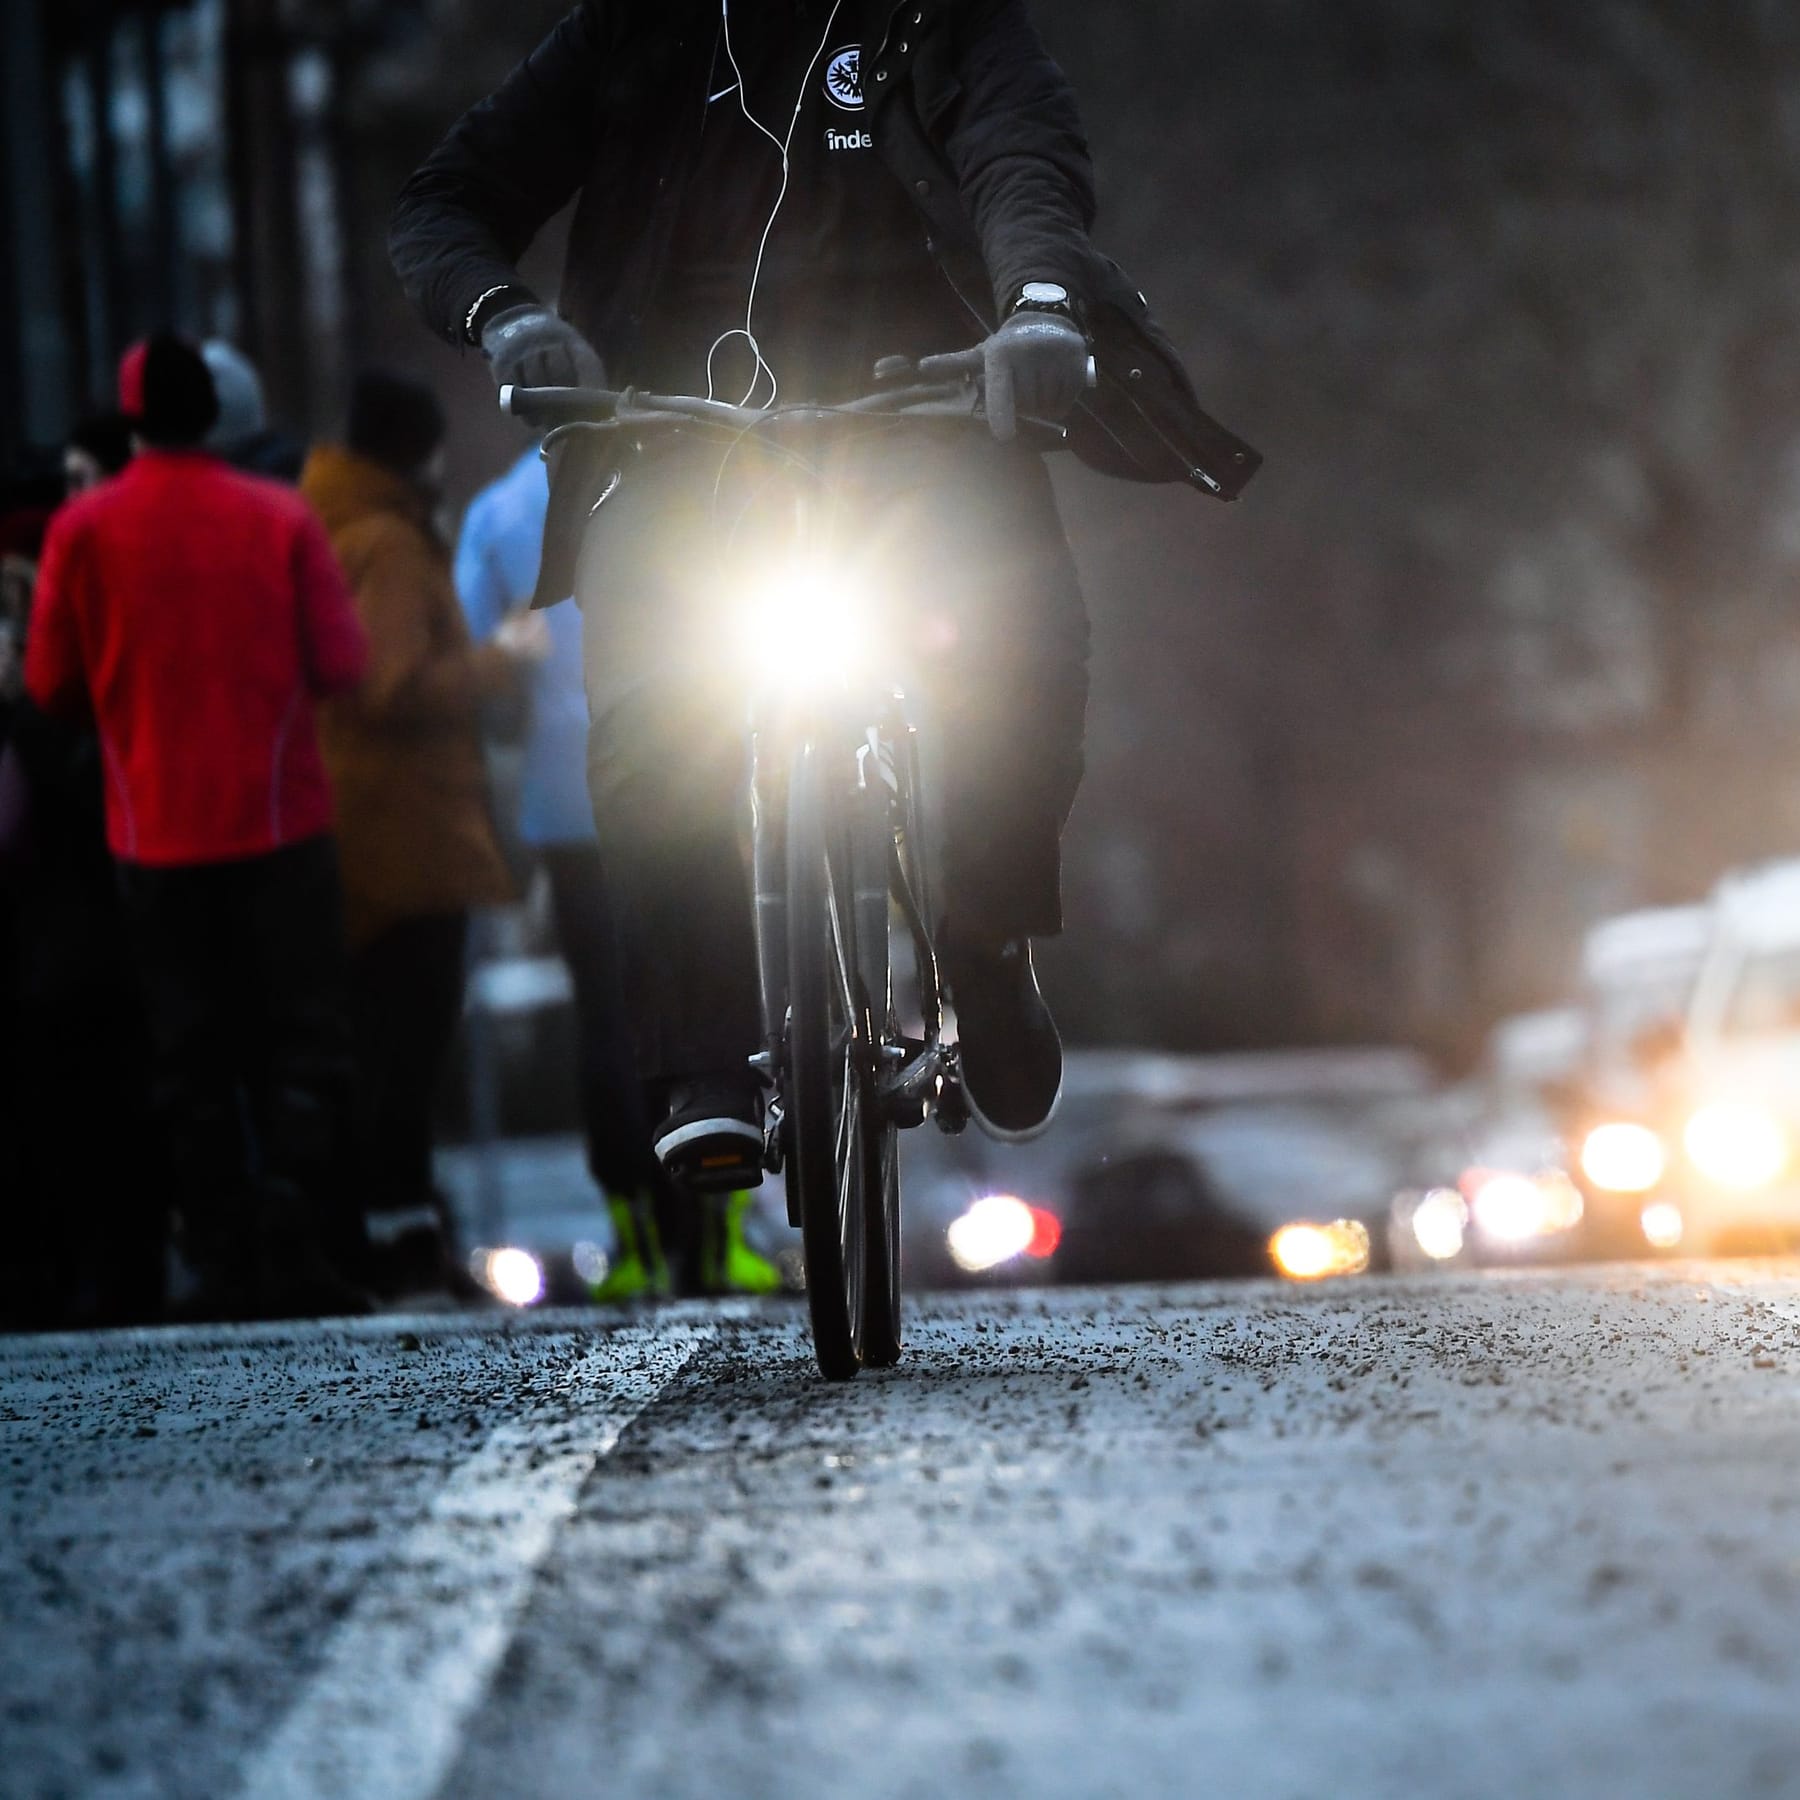 Fahrradlicht: So sieht man Radlerinnen auch im Dunkeln, Bayern 1, Radio